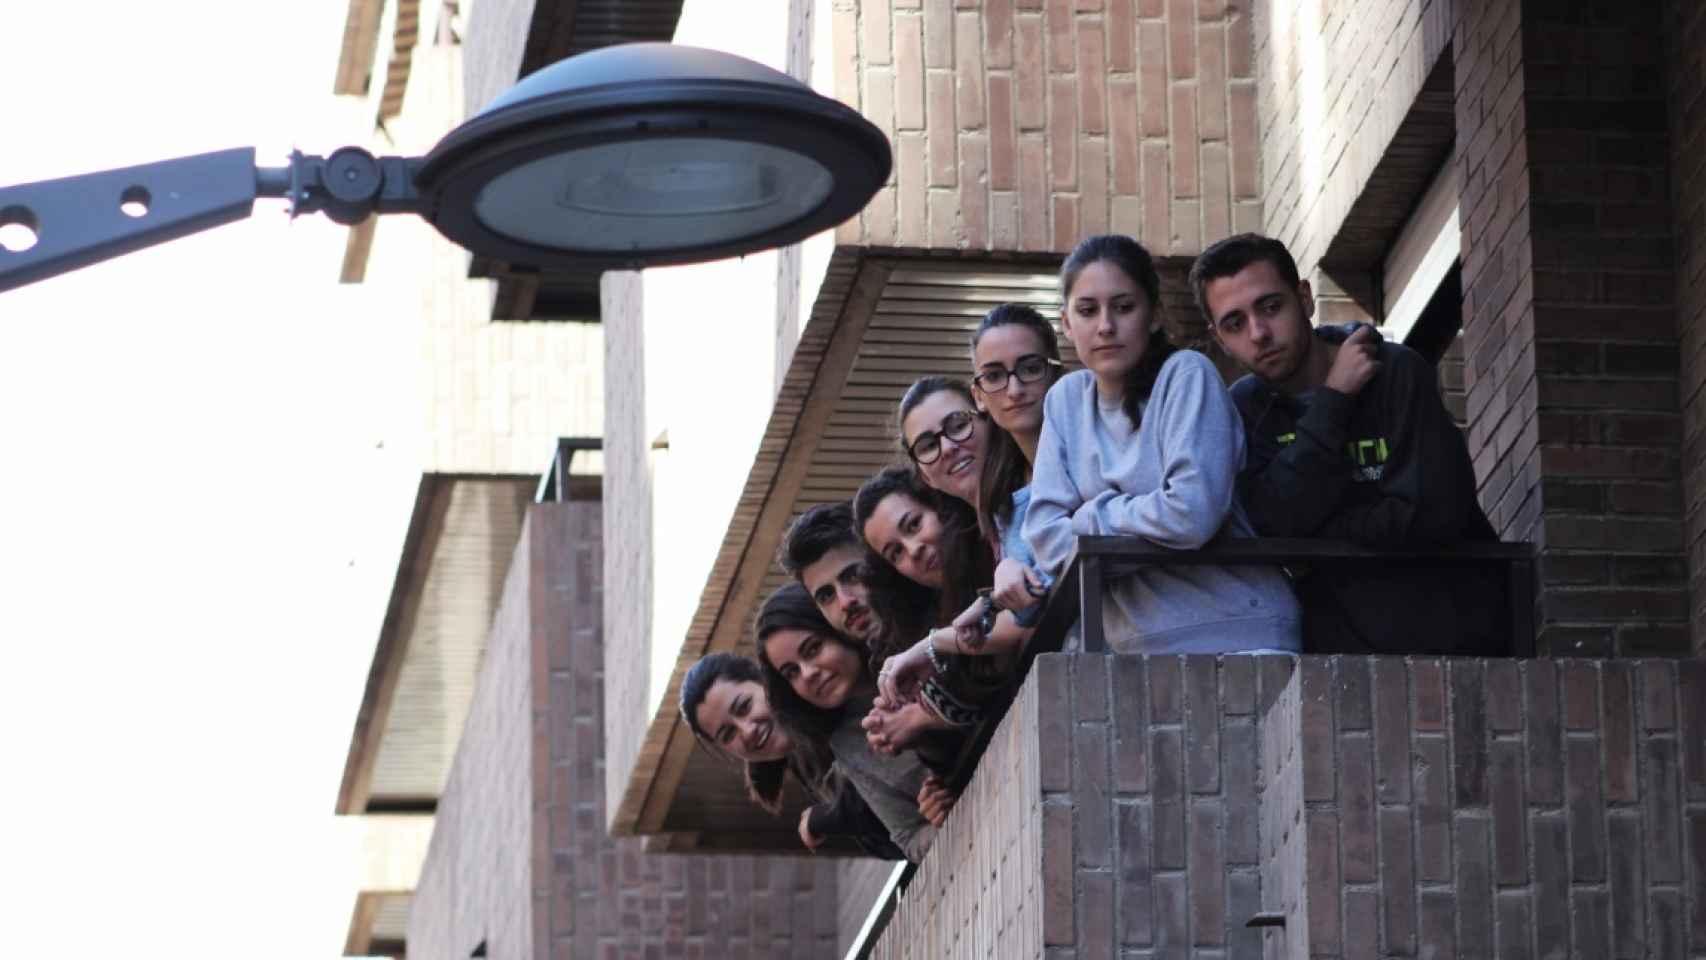 Estudiantes de la residencia Student observan los acontecimientos desde sus balcones.